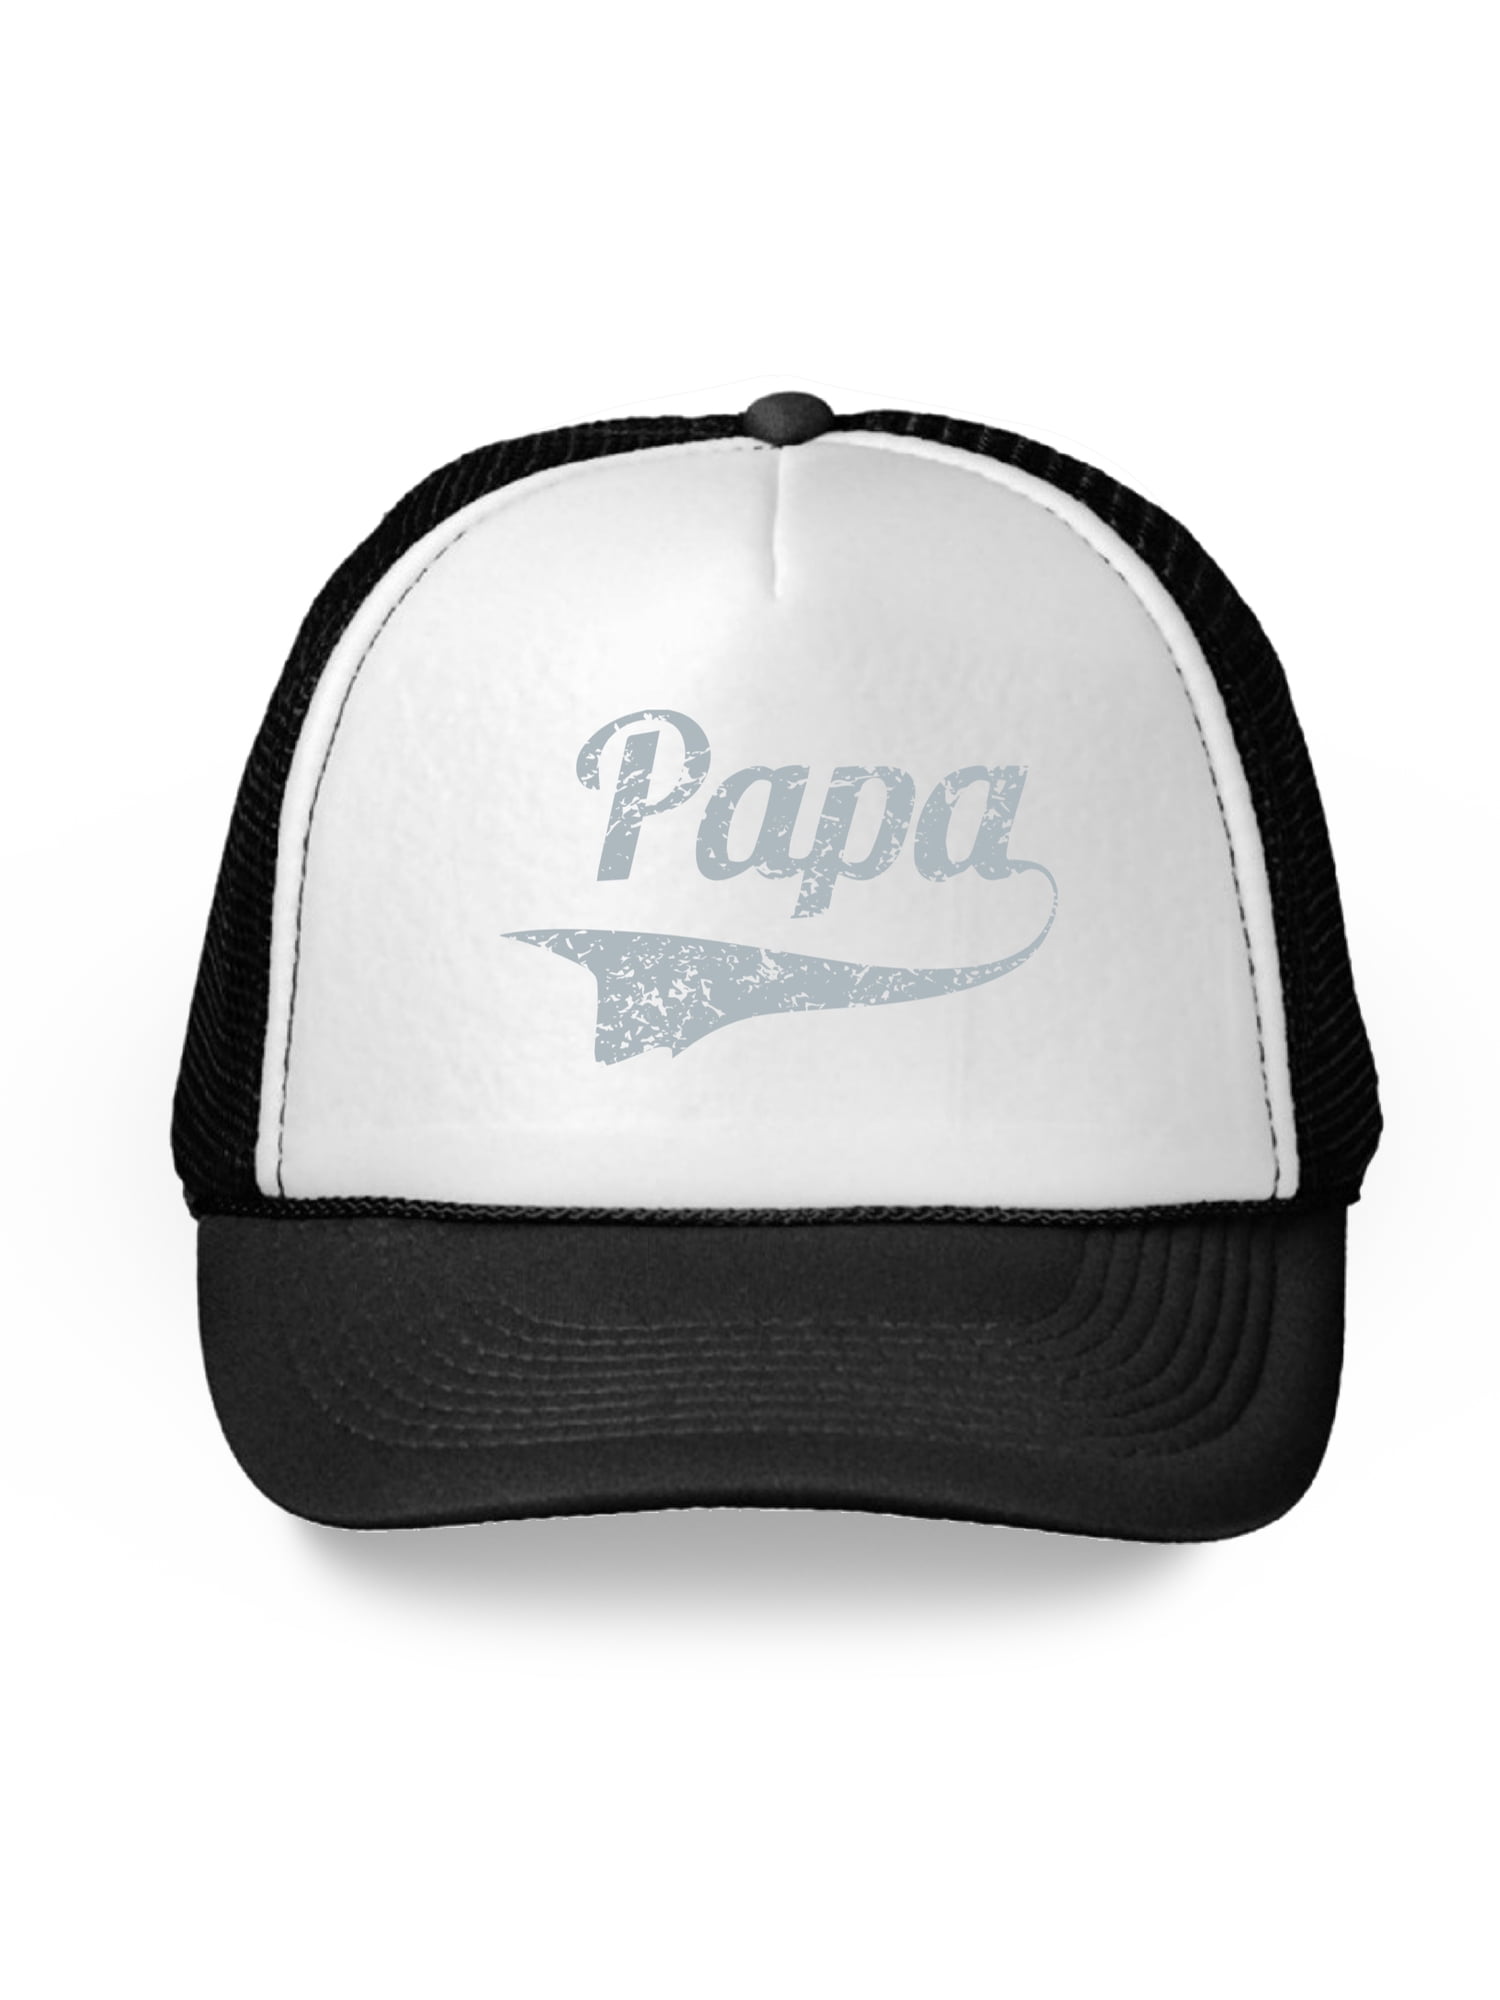 Awkward Styles Papa Trucker Hat Fathers Day Gifts Palestine